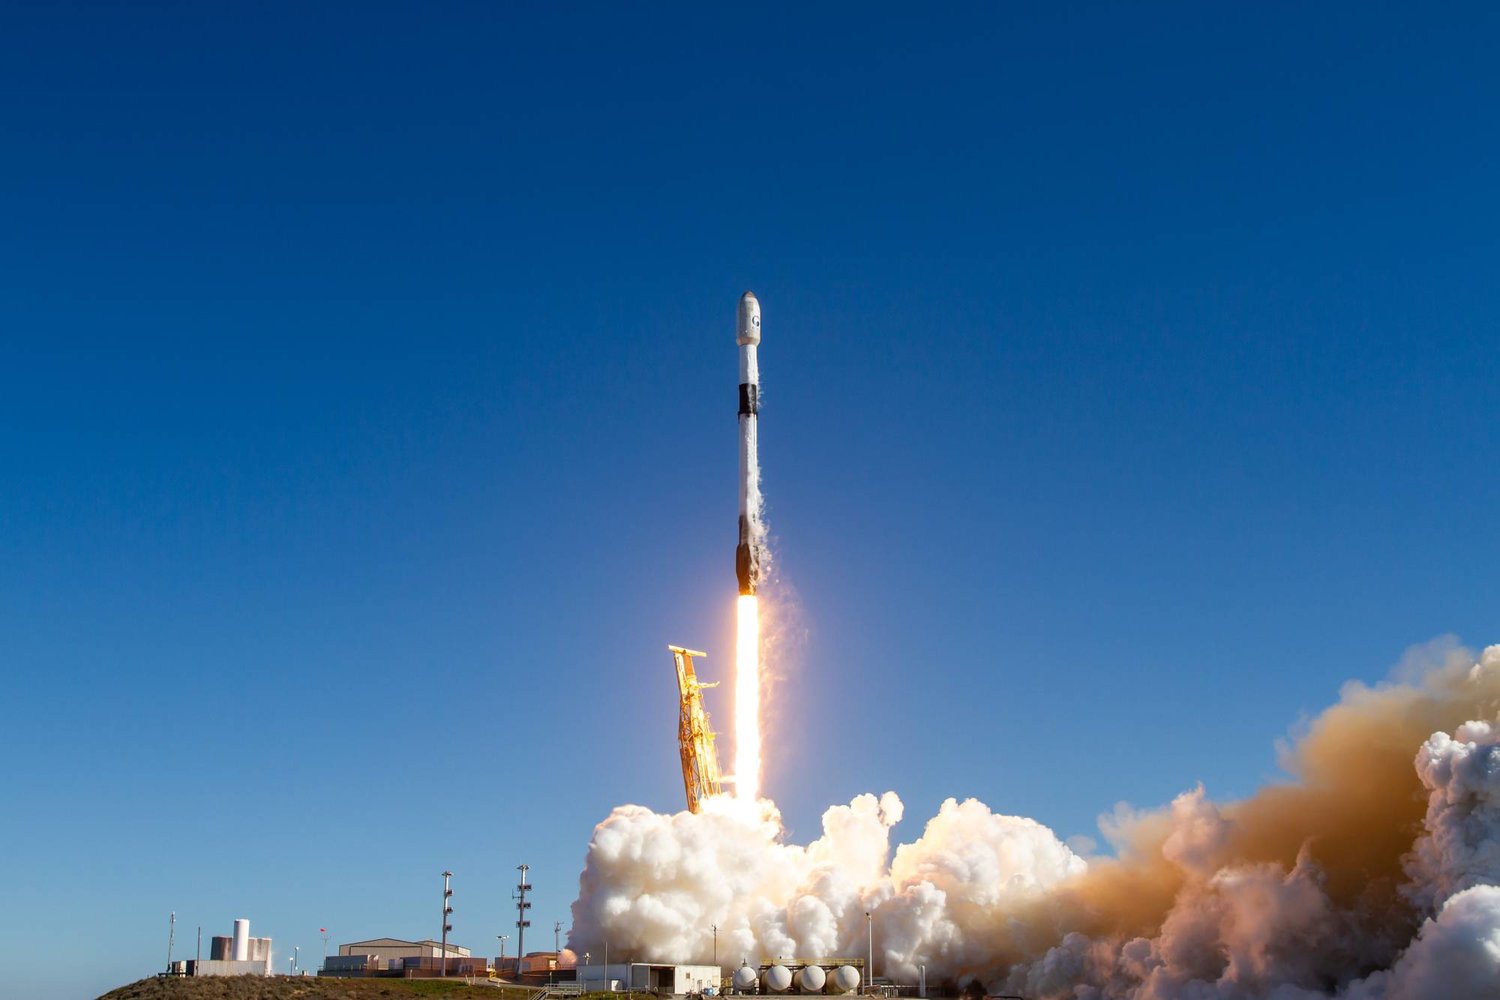 صورة منشورة أتاحتها شركة «سبيس إكس» عبر وزارة الدفاع الكورية الجنوبية تُظهر صاروخ «سبيس إكس فالكون 9» يحمل أول قمر اصطناعي للتجسس العسكري لكوريا الجنوبية وهو ينطلق من قاعدة في كاليفورنيا (إ.ب.أ)